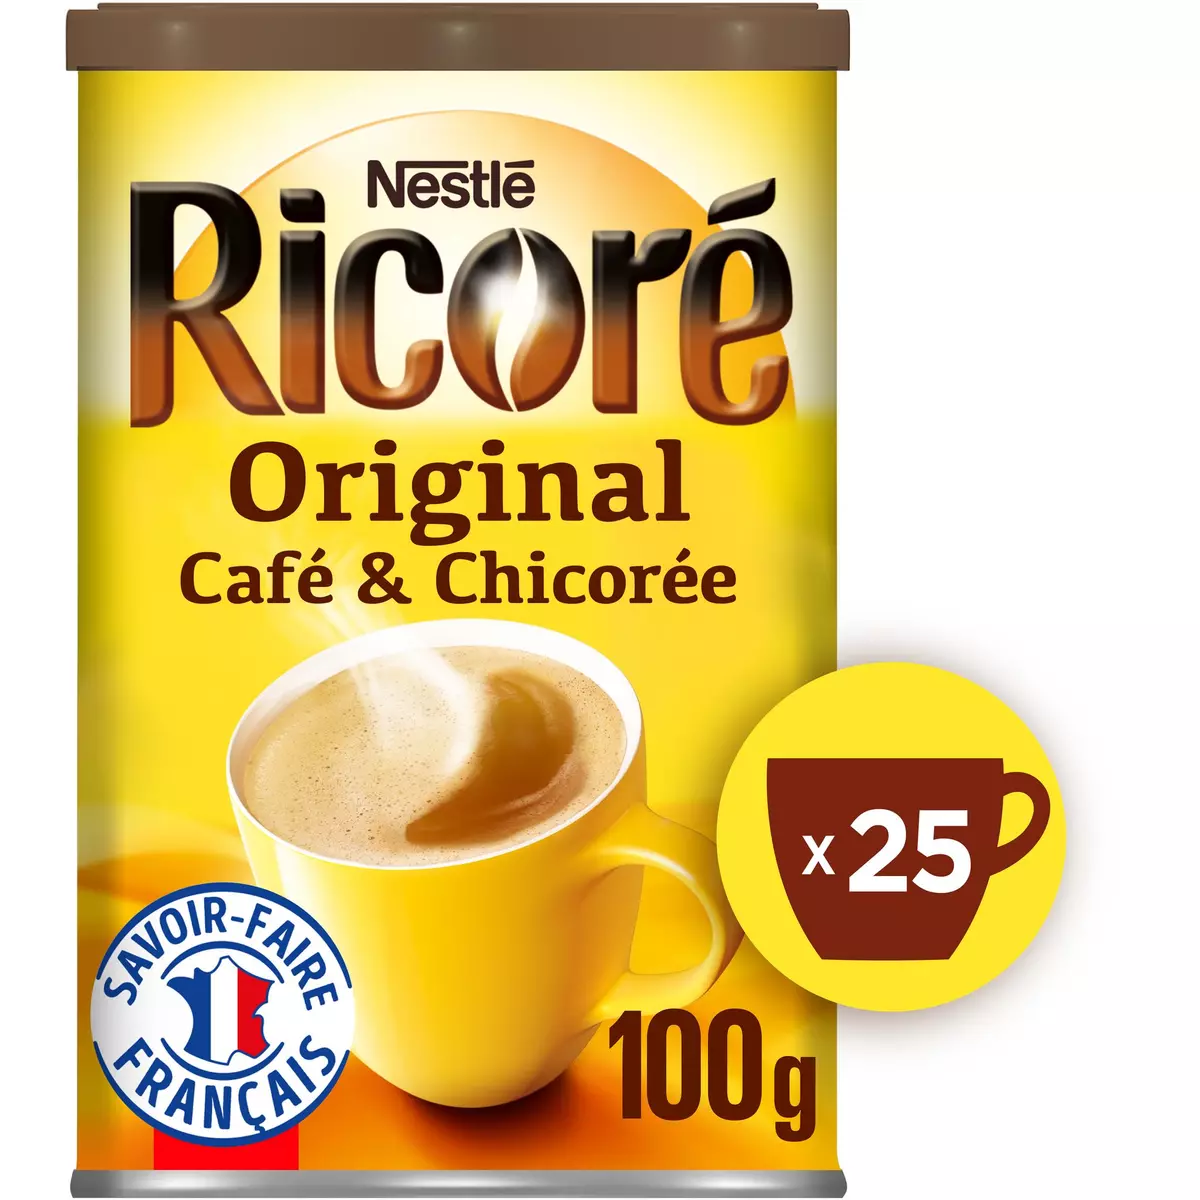 RICORE Café chicorée soluble Ricoré original 100g